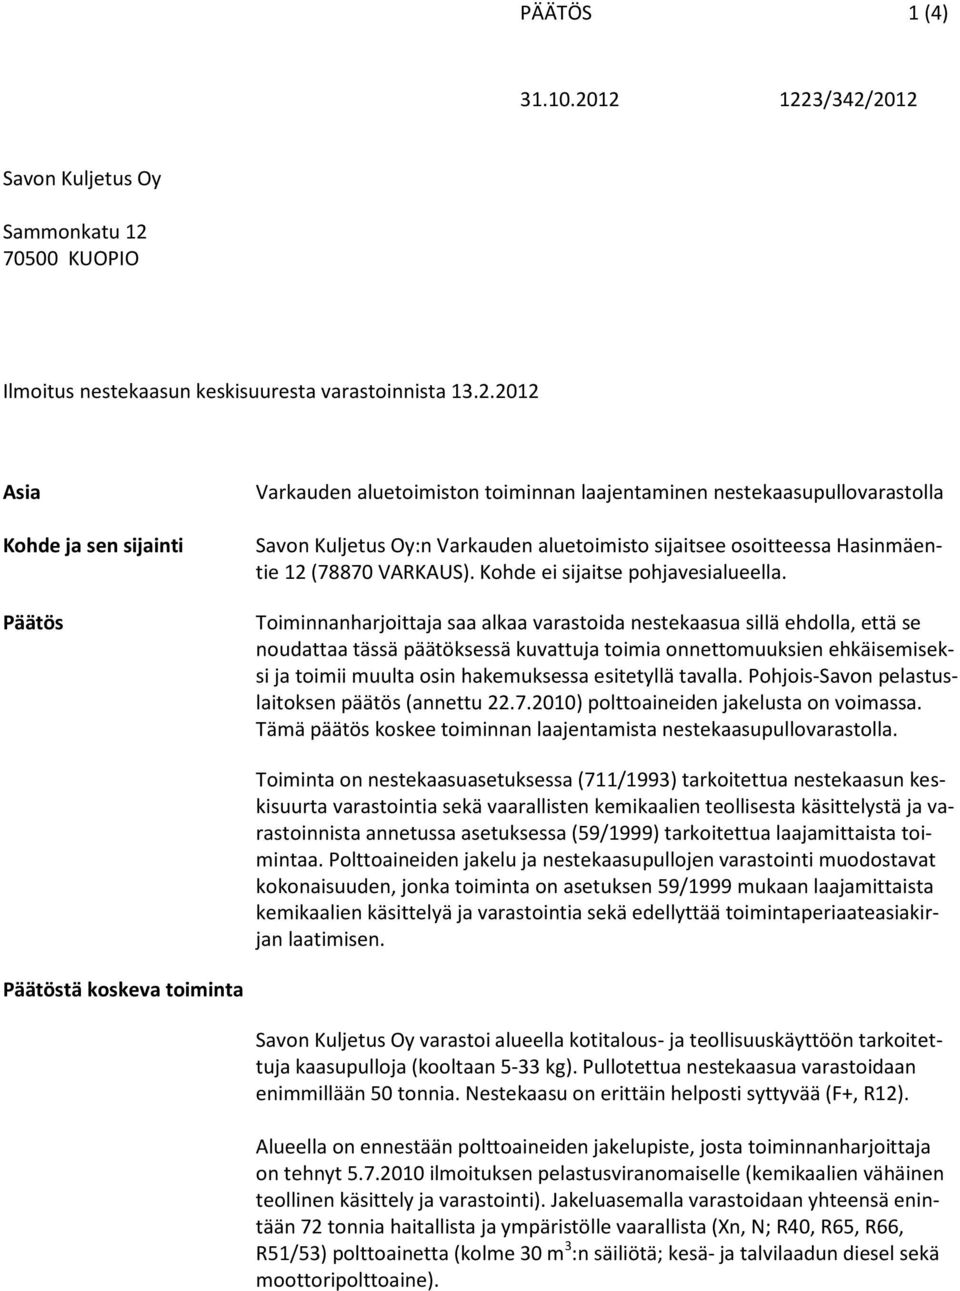 2012 Asia Kohde ja sen sijainti Päätös Varkauden aluetoimiston toiminnan laajentaminen nestekaasupullovarastolla Savon Kuljetus Oy:n Varkauden aluetoimisto sijaitsee osoitteessa Hasinmäentie 12